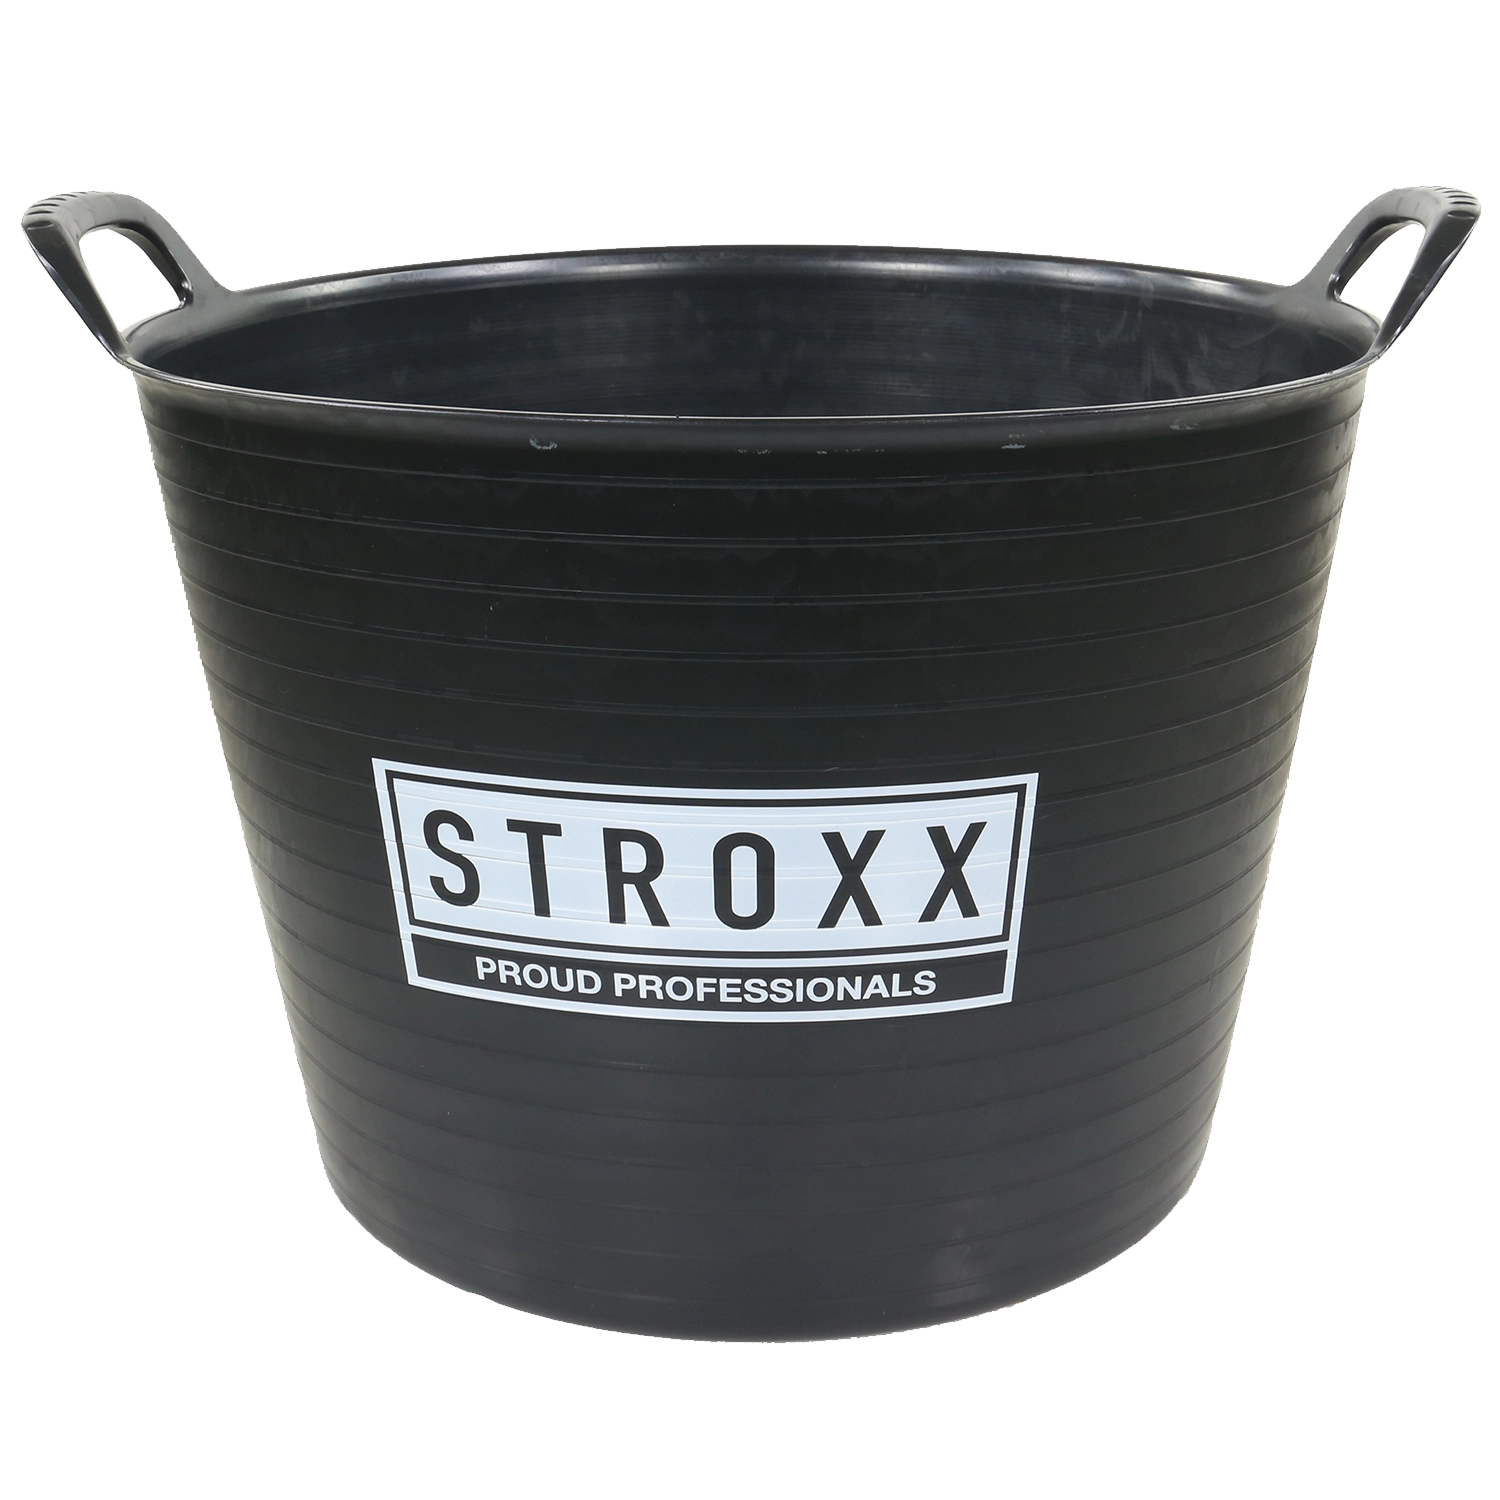 STROXX Tub Flexible 42L: Grijze flexibele emmer van 42 liter met Handgrepen en een glad oppervlak.